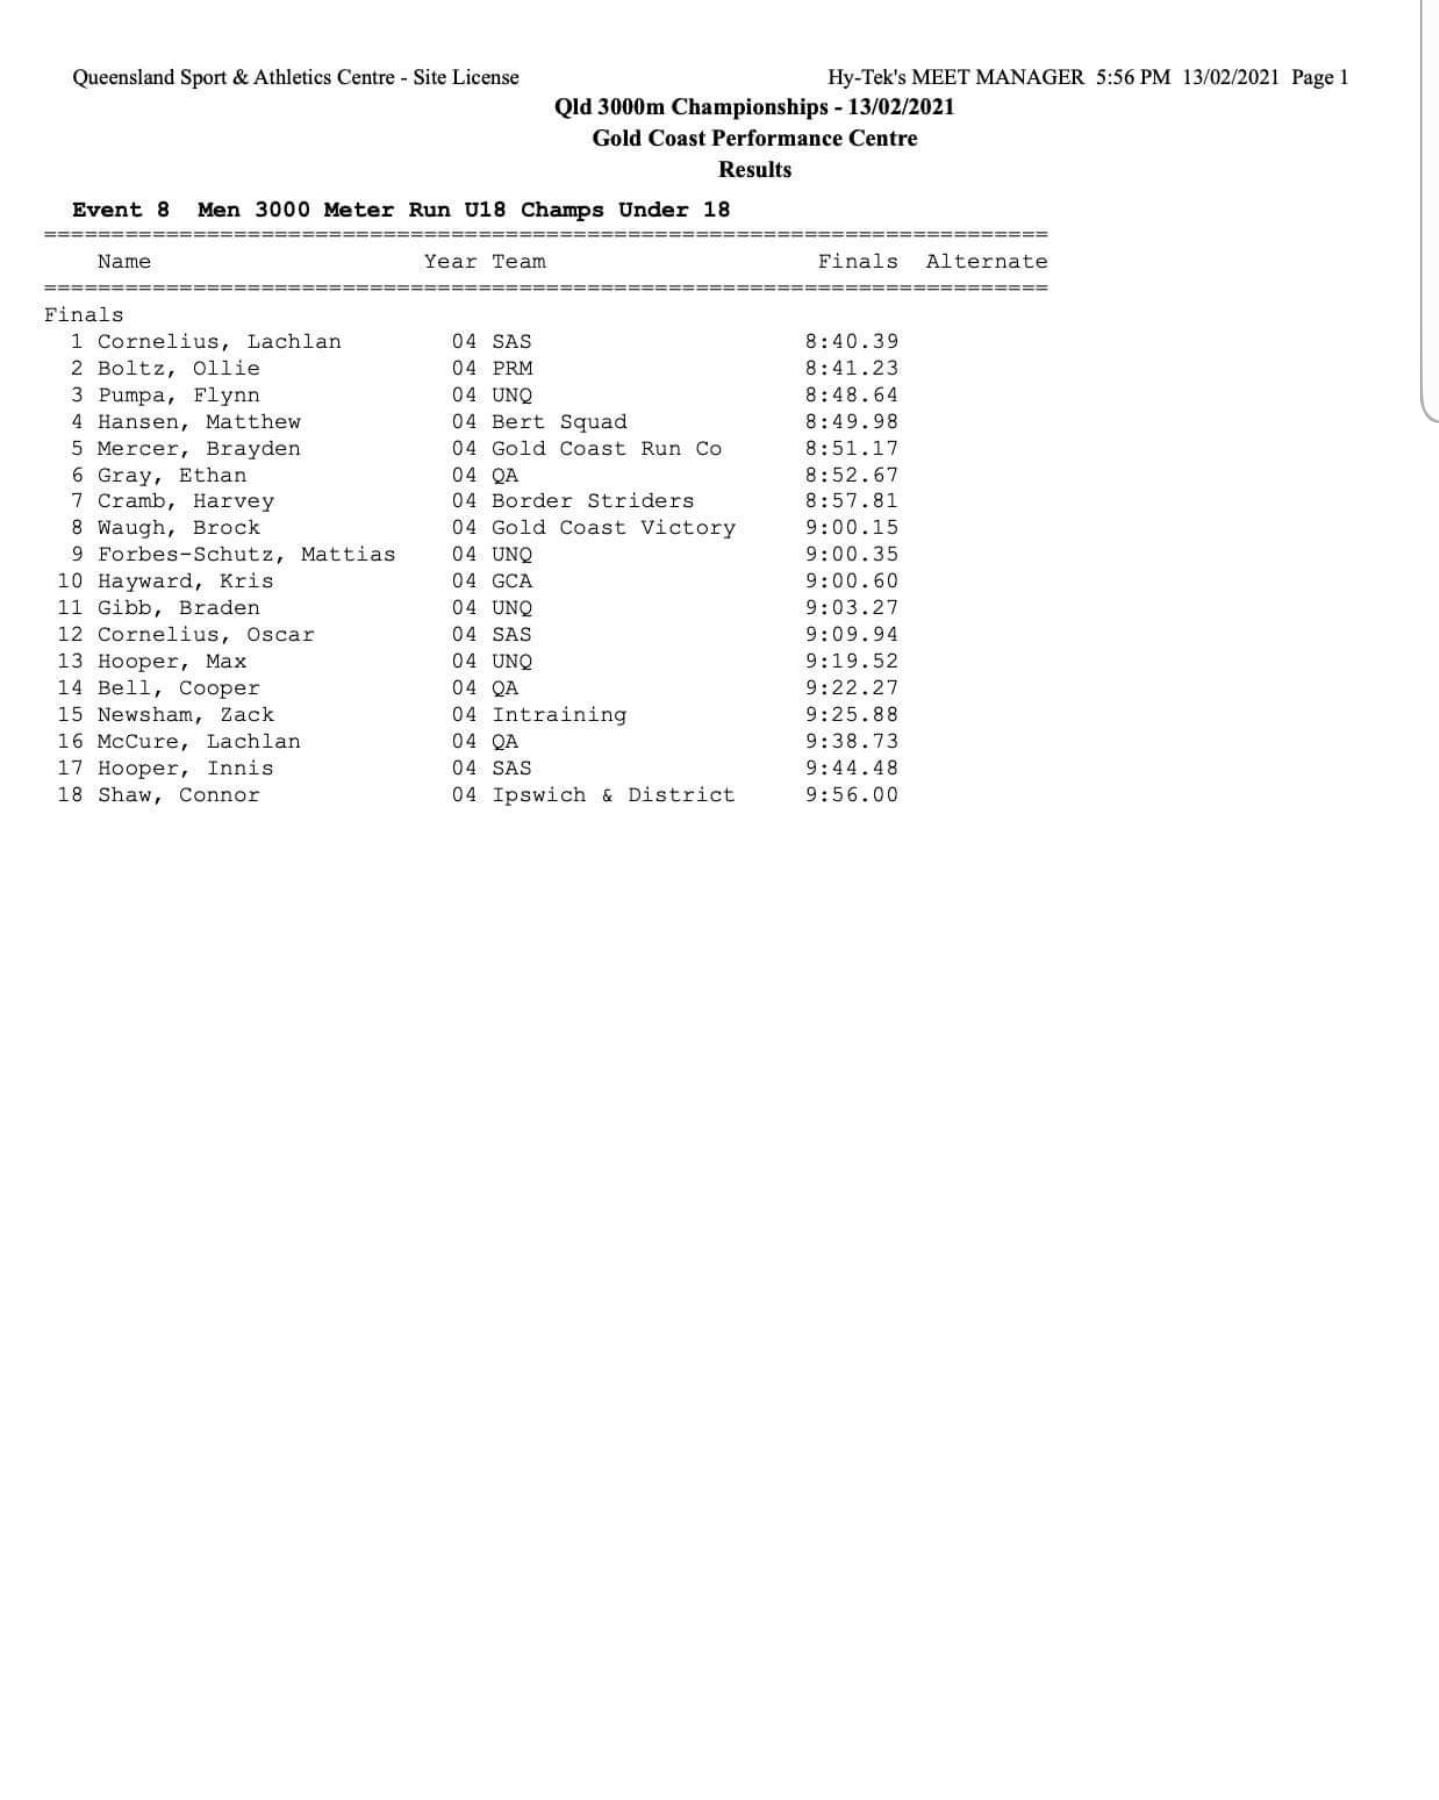 Men 3000 Meter Run U18 Champs- Results